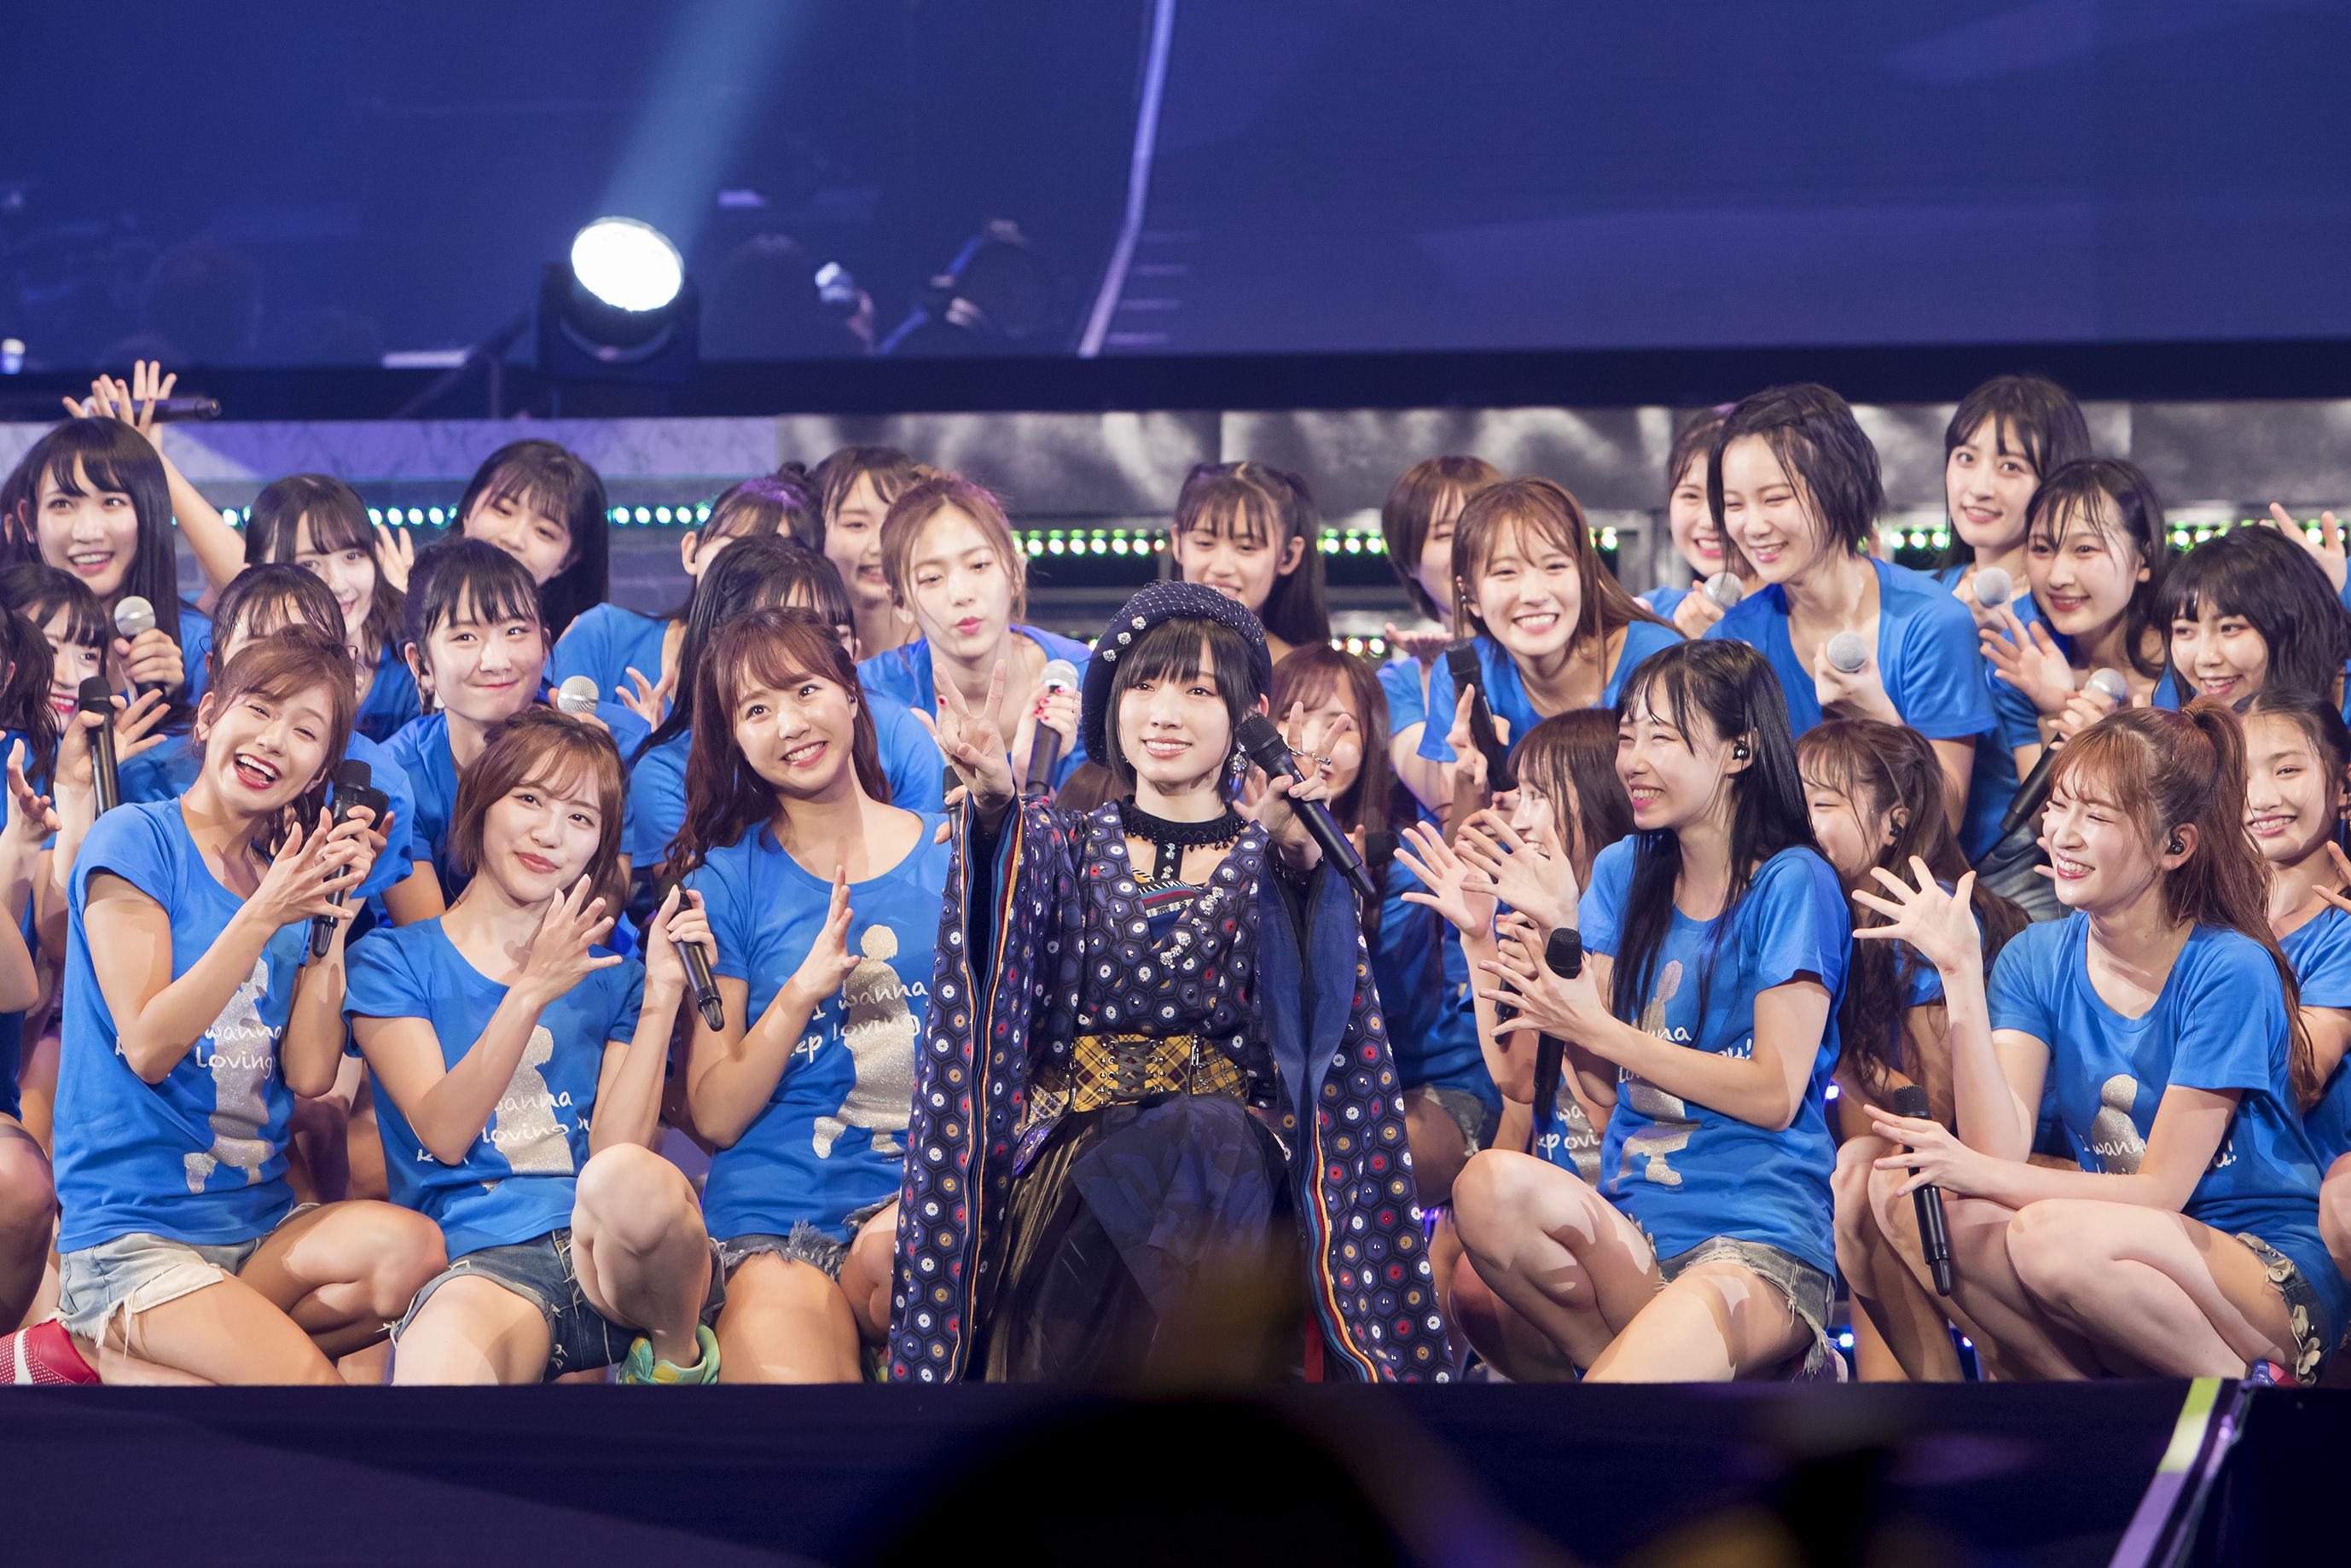 太田夢莉のNMB48卒業に見る48グループ特有の「人間の成長物語」の画像002